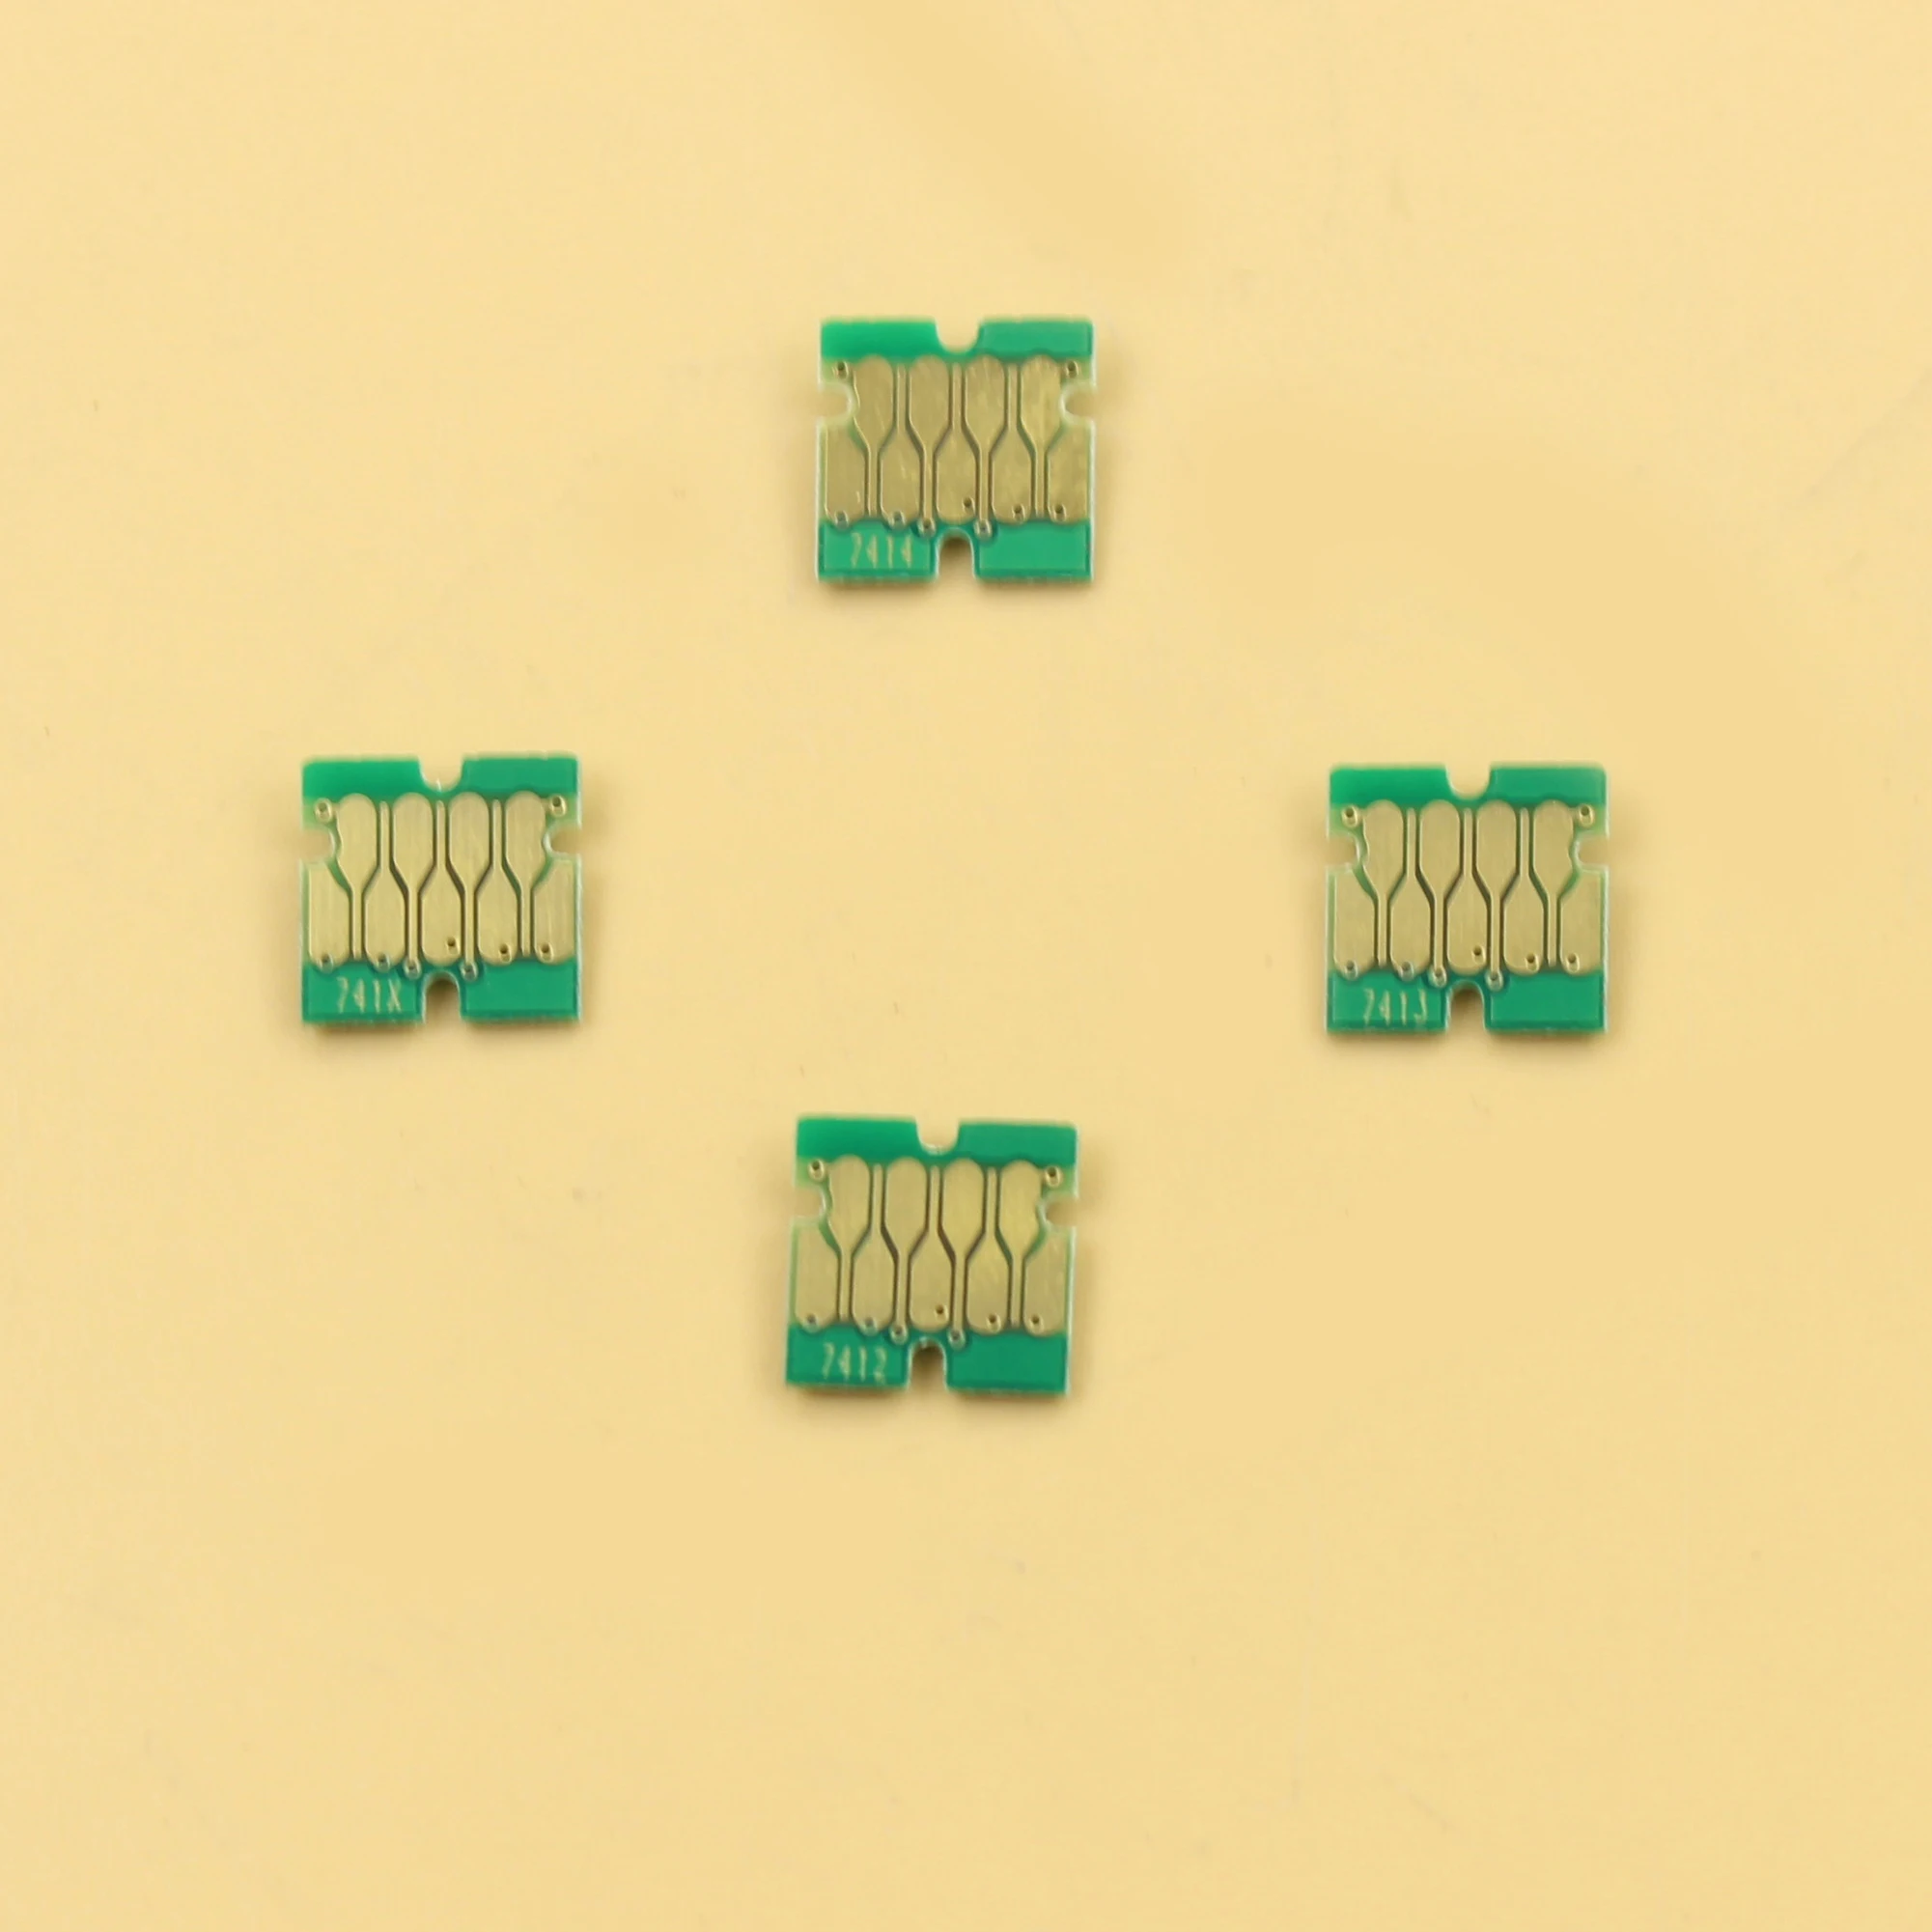 10 комплектов 40 штук стабильного чипа для чипов чернильных картриджей Epson Surecolor F6200/F9200/F7200/F9270/F7270/F6270